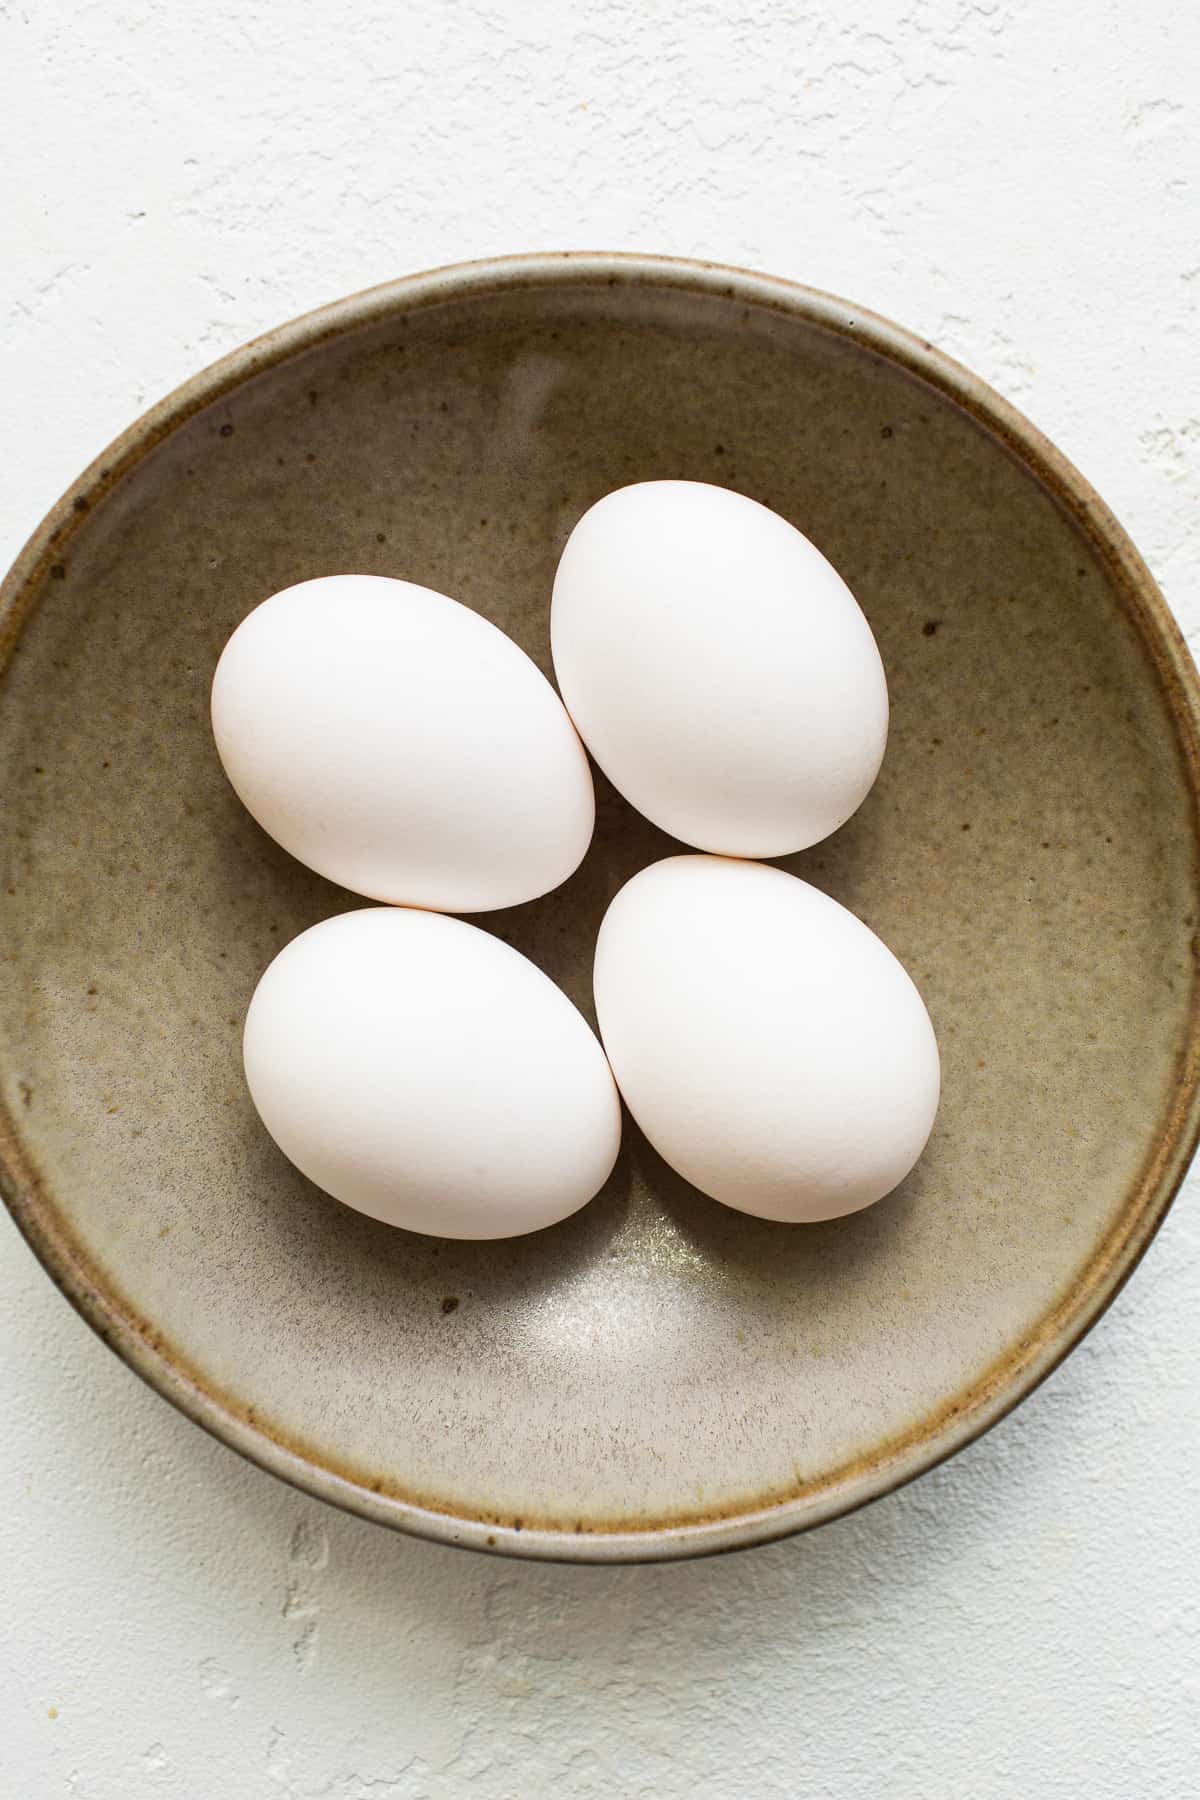 تخم مرغ در یک کاسه.